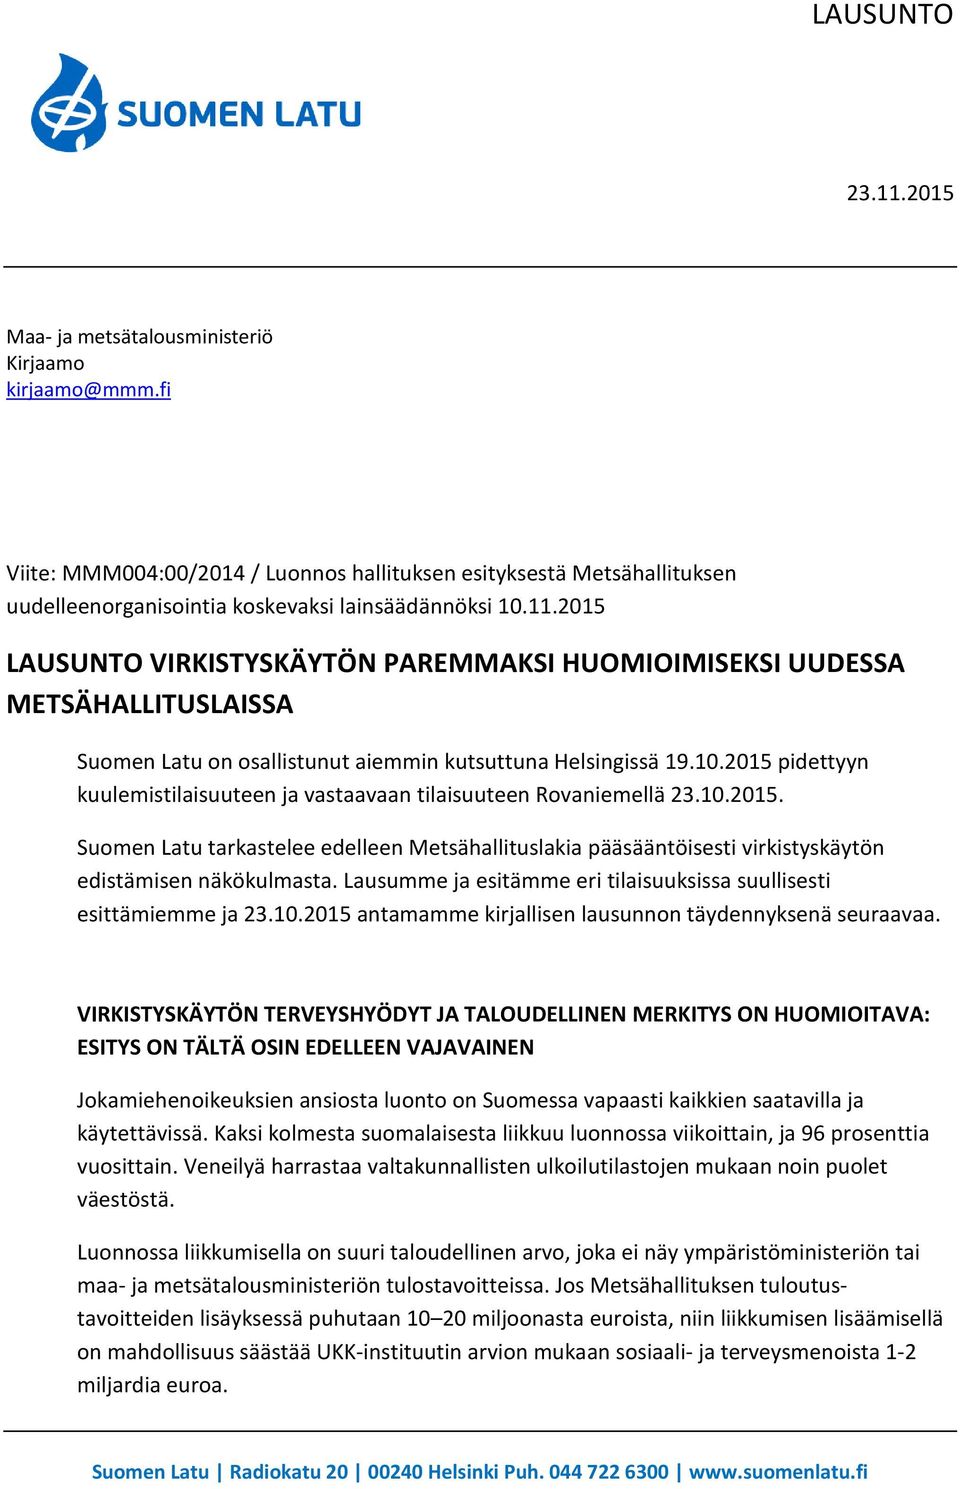 2015 pidettyyn kuulemistilaisuuteen ja vastaavaan tilaisuuteen Rovaniemellä 23.10.2015. Suomen Latu tarkastelee edelleen Metsähallituslakia pääsääntöisesti virkistyskäytön edistämisen näkökulmasta.